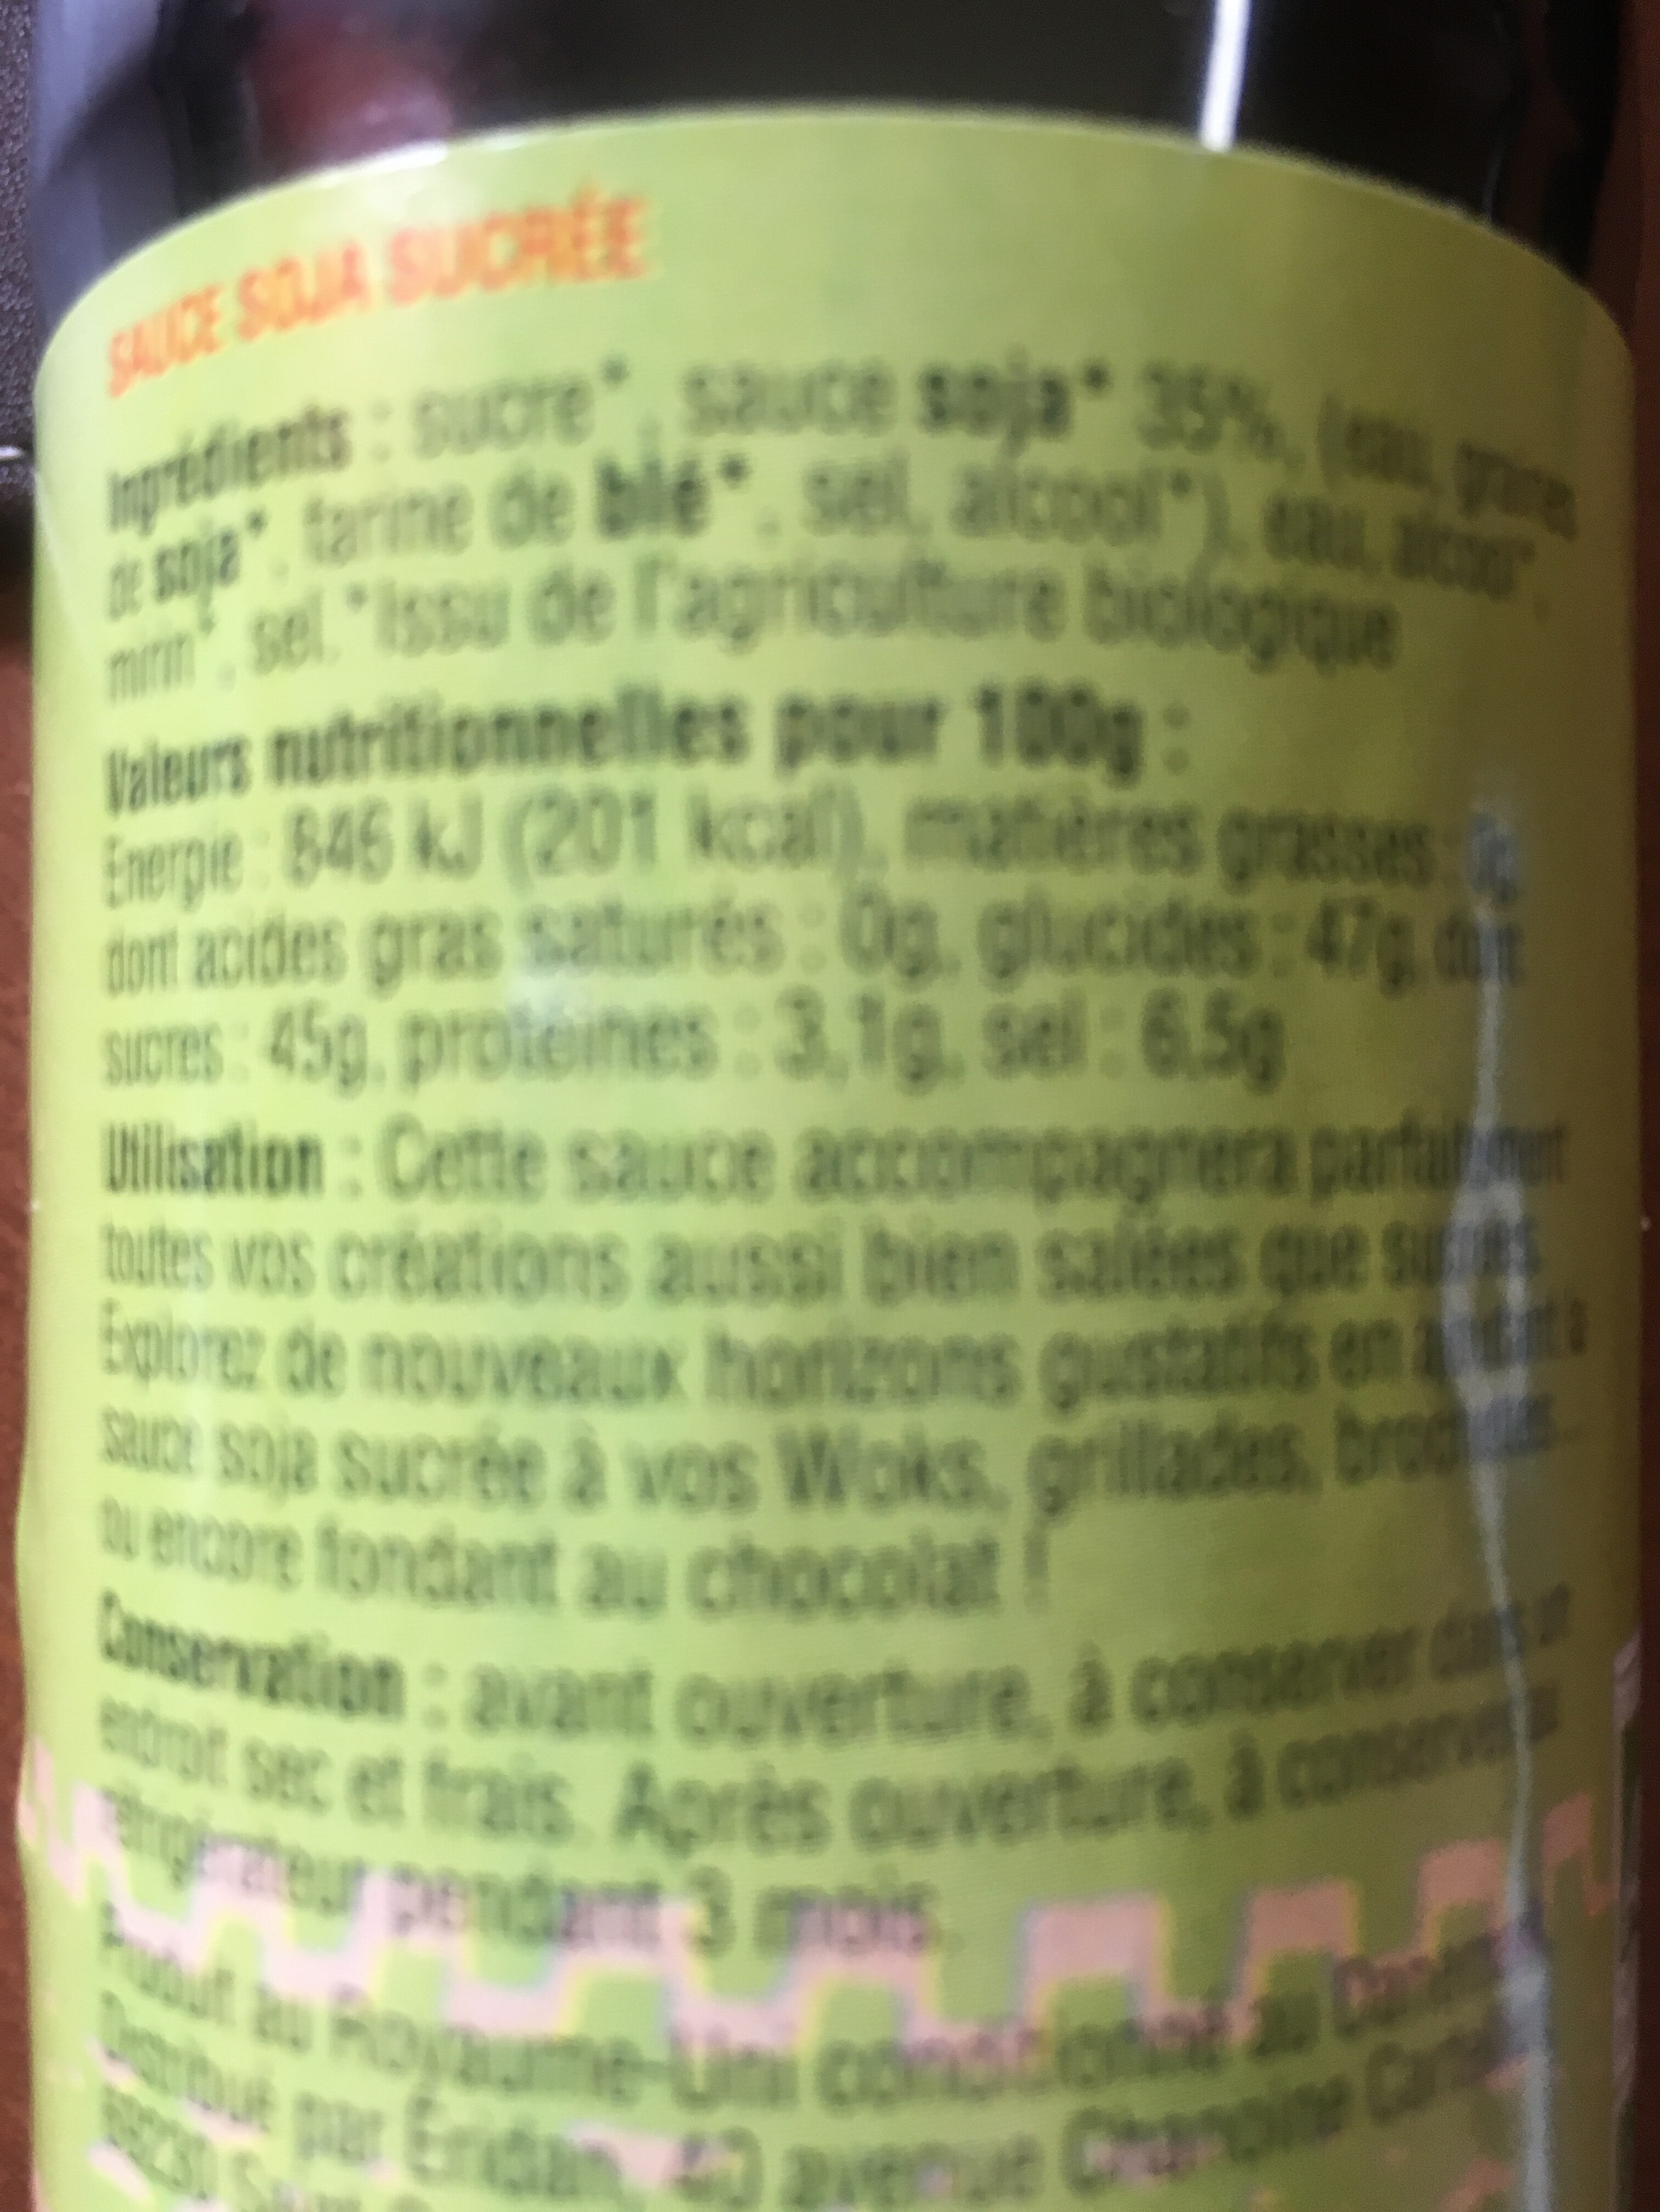 Sauce soja sucrée - Ingrédients